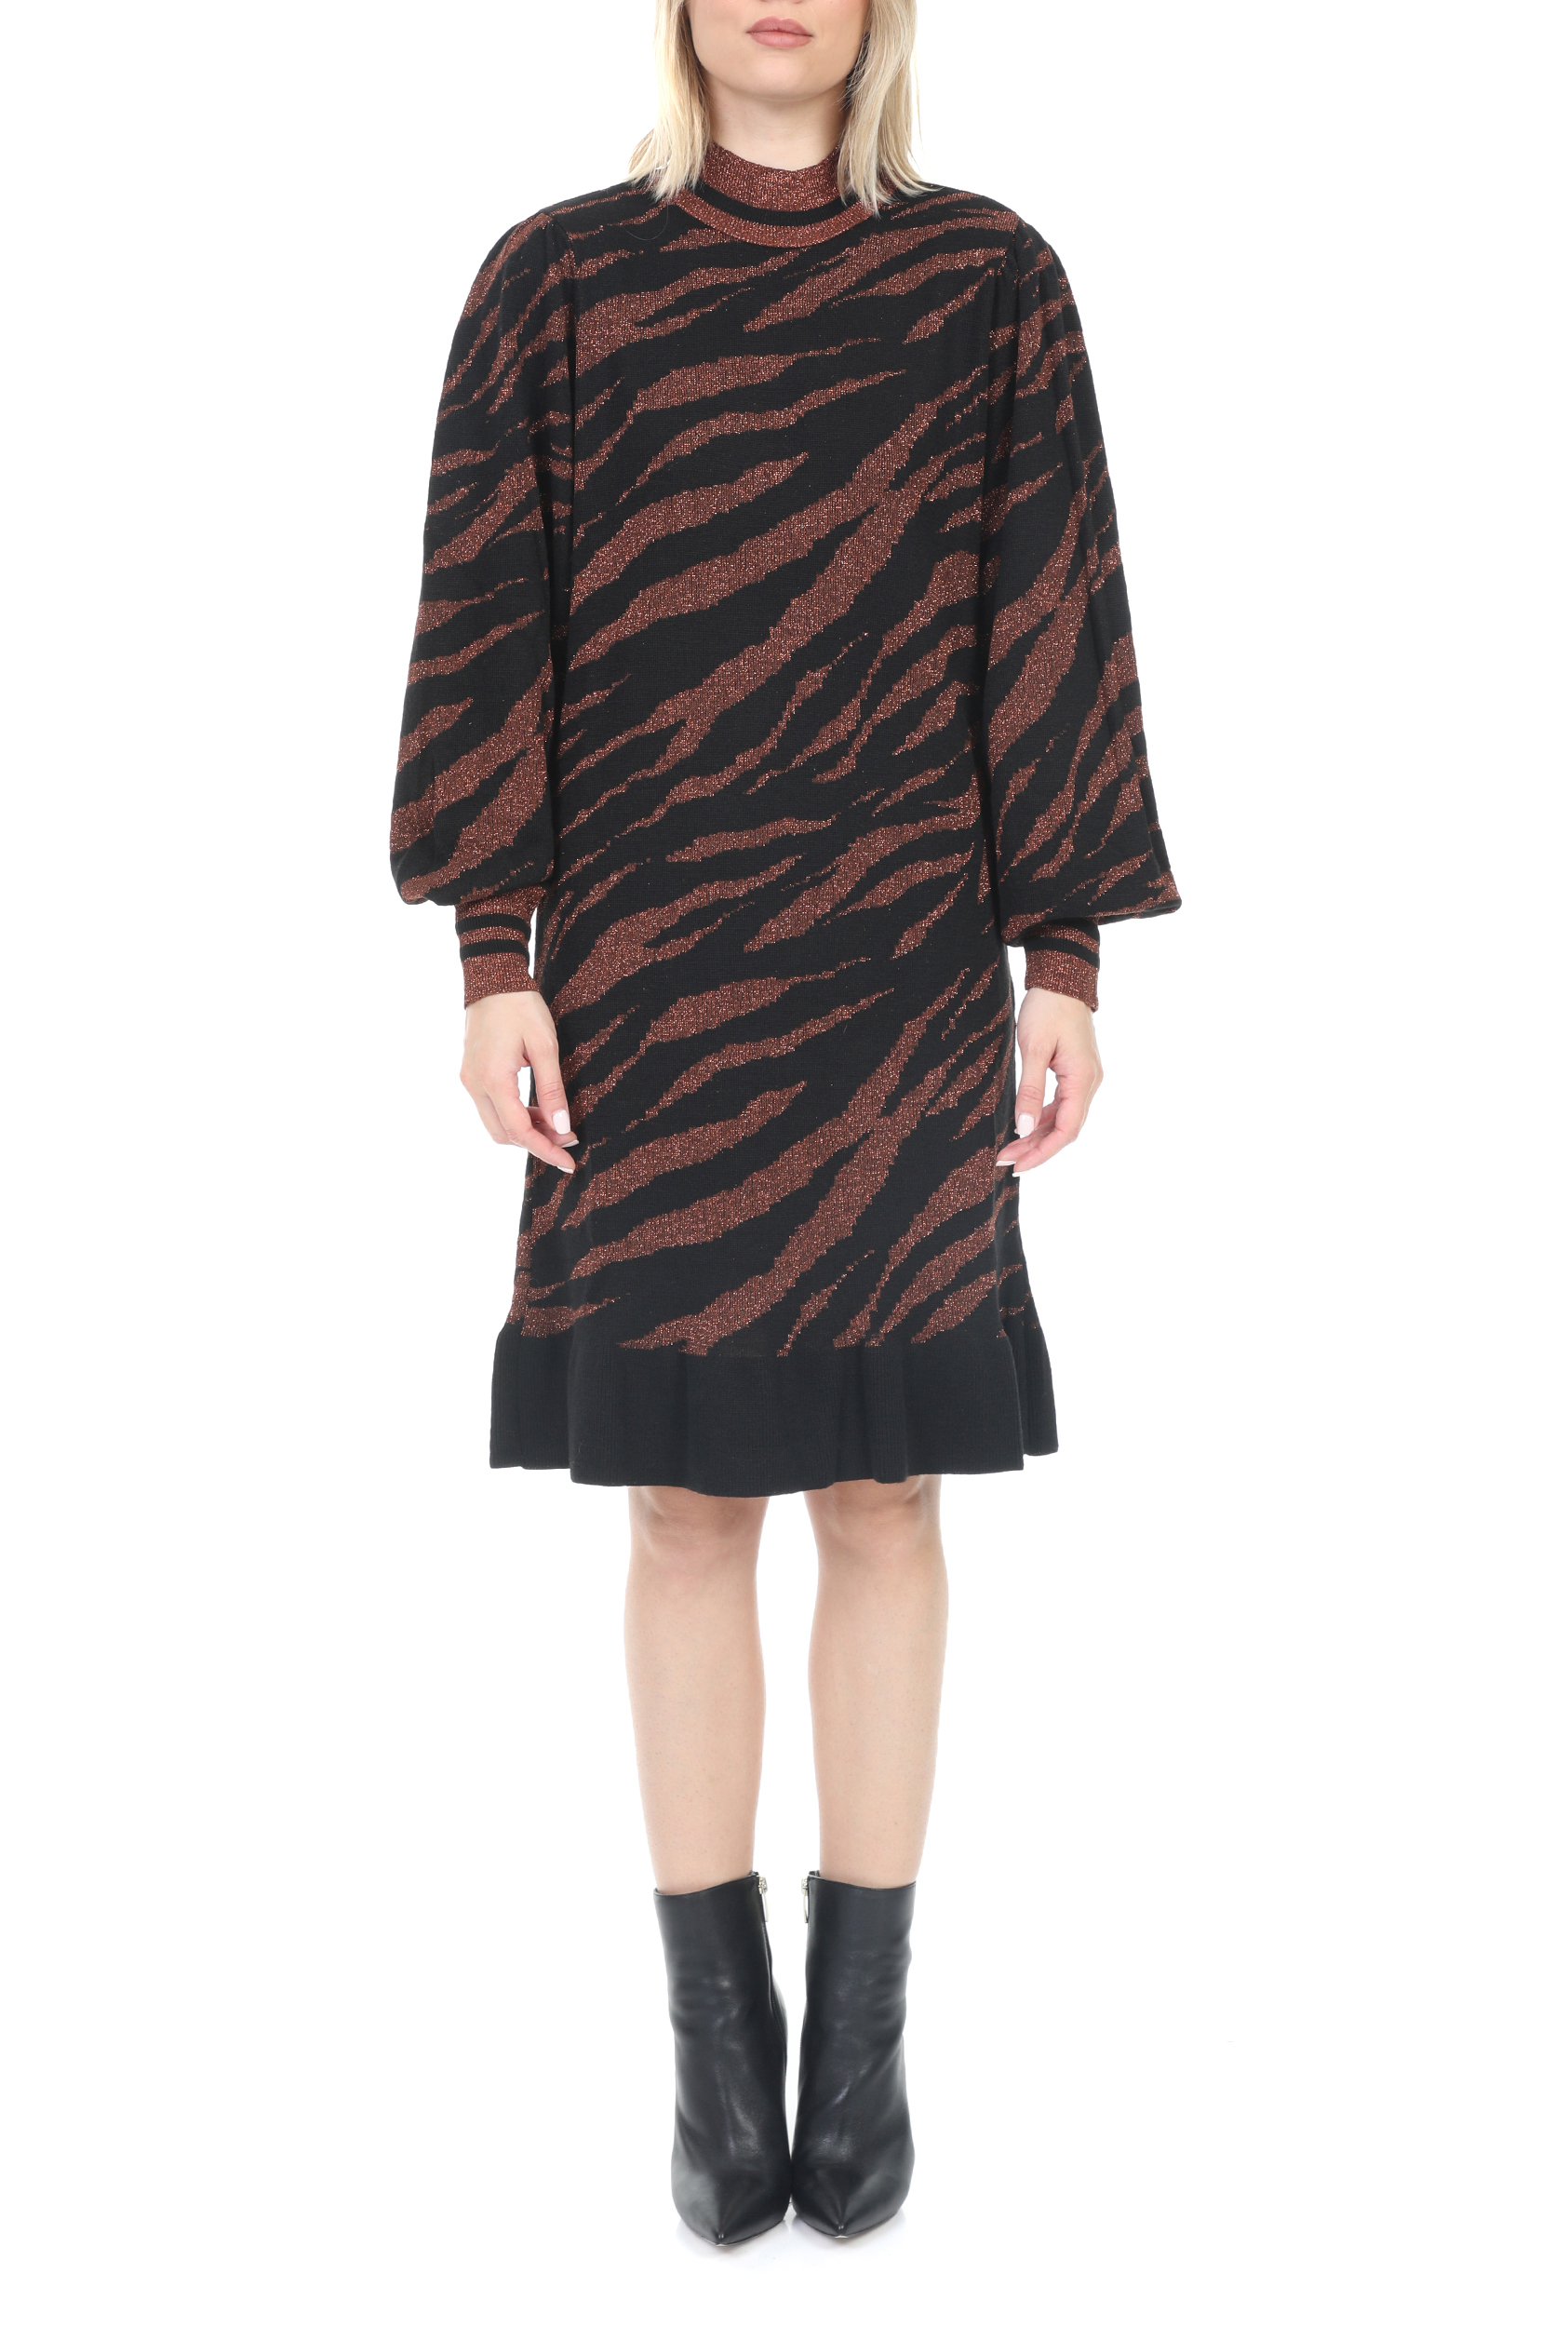 KOCCA – Γυναικειο mini φορεμα KOCCA GUARDIAN μαυρο καφε